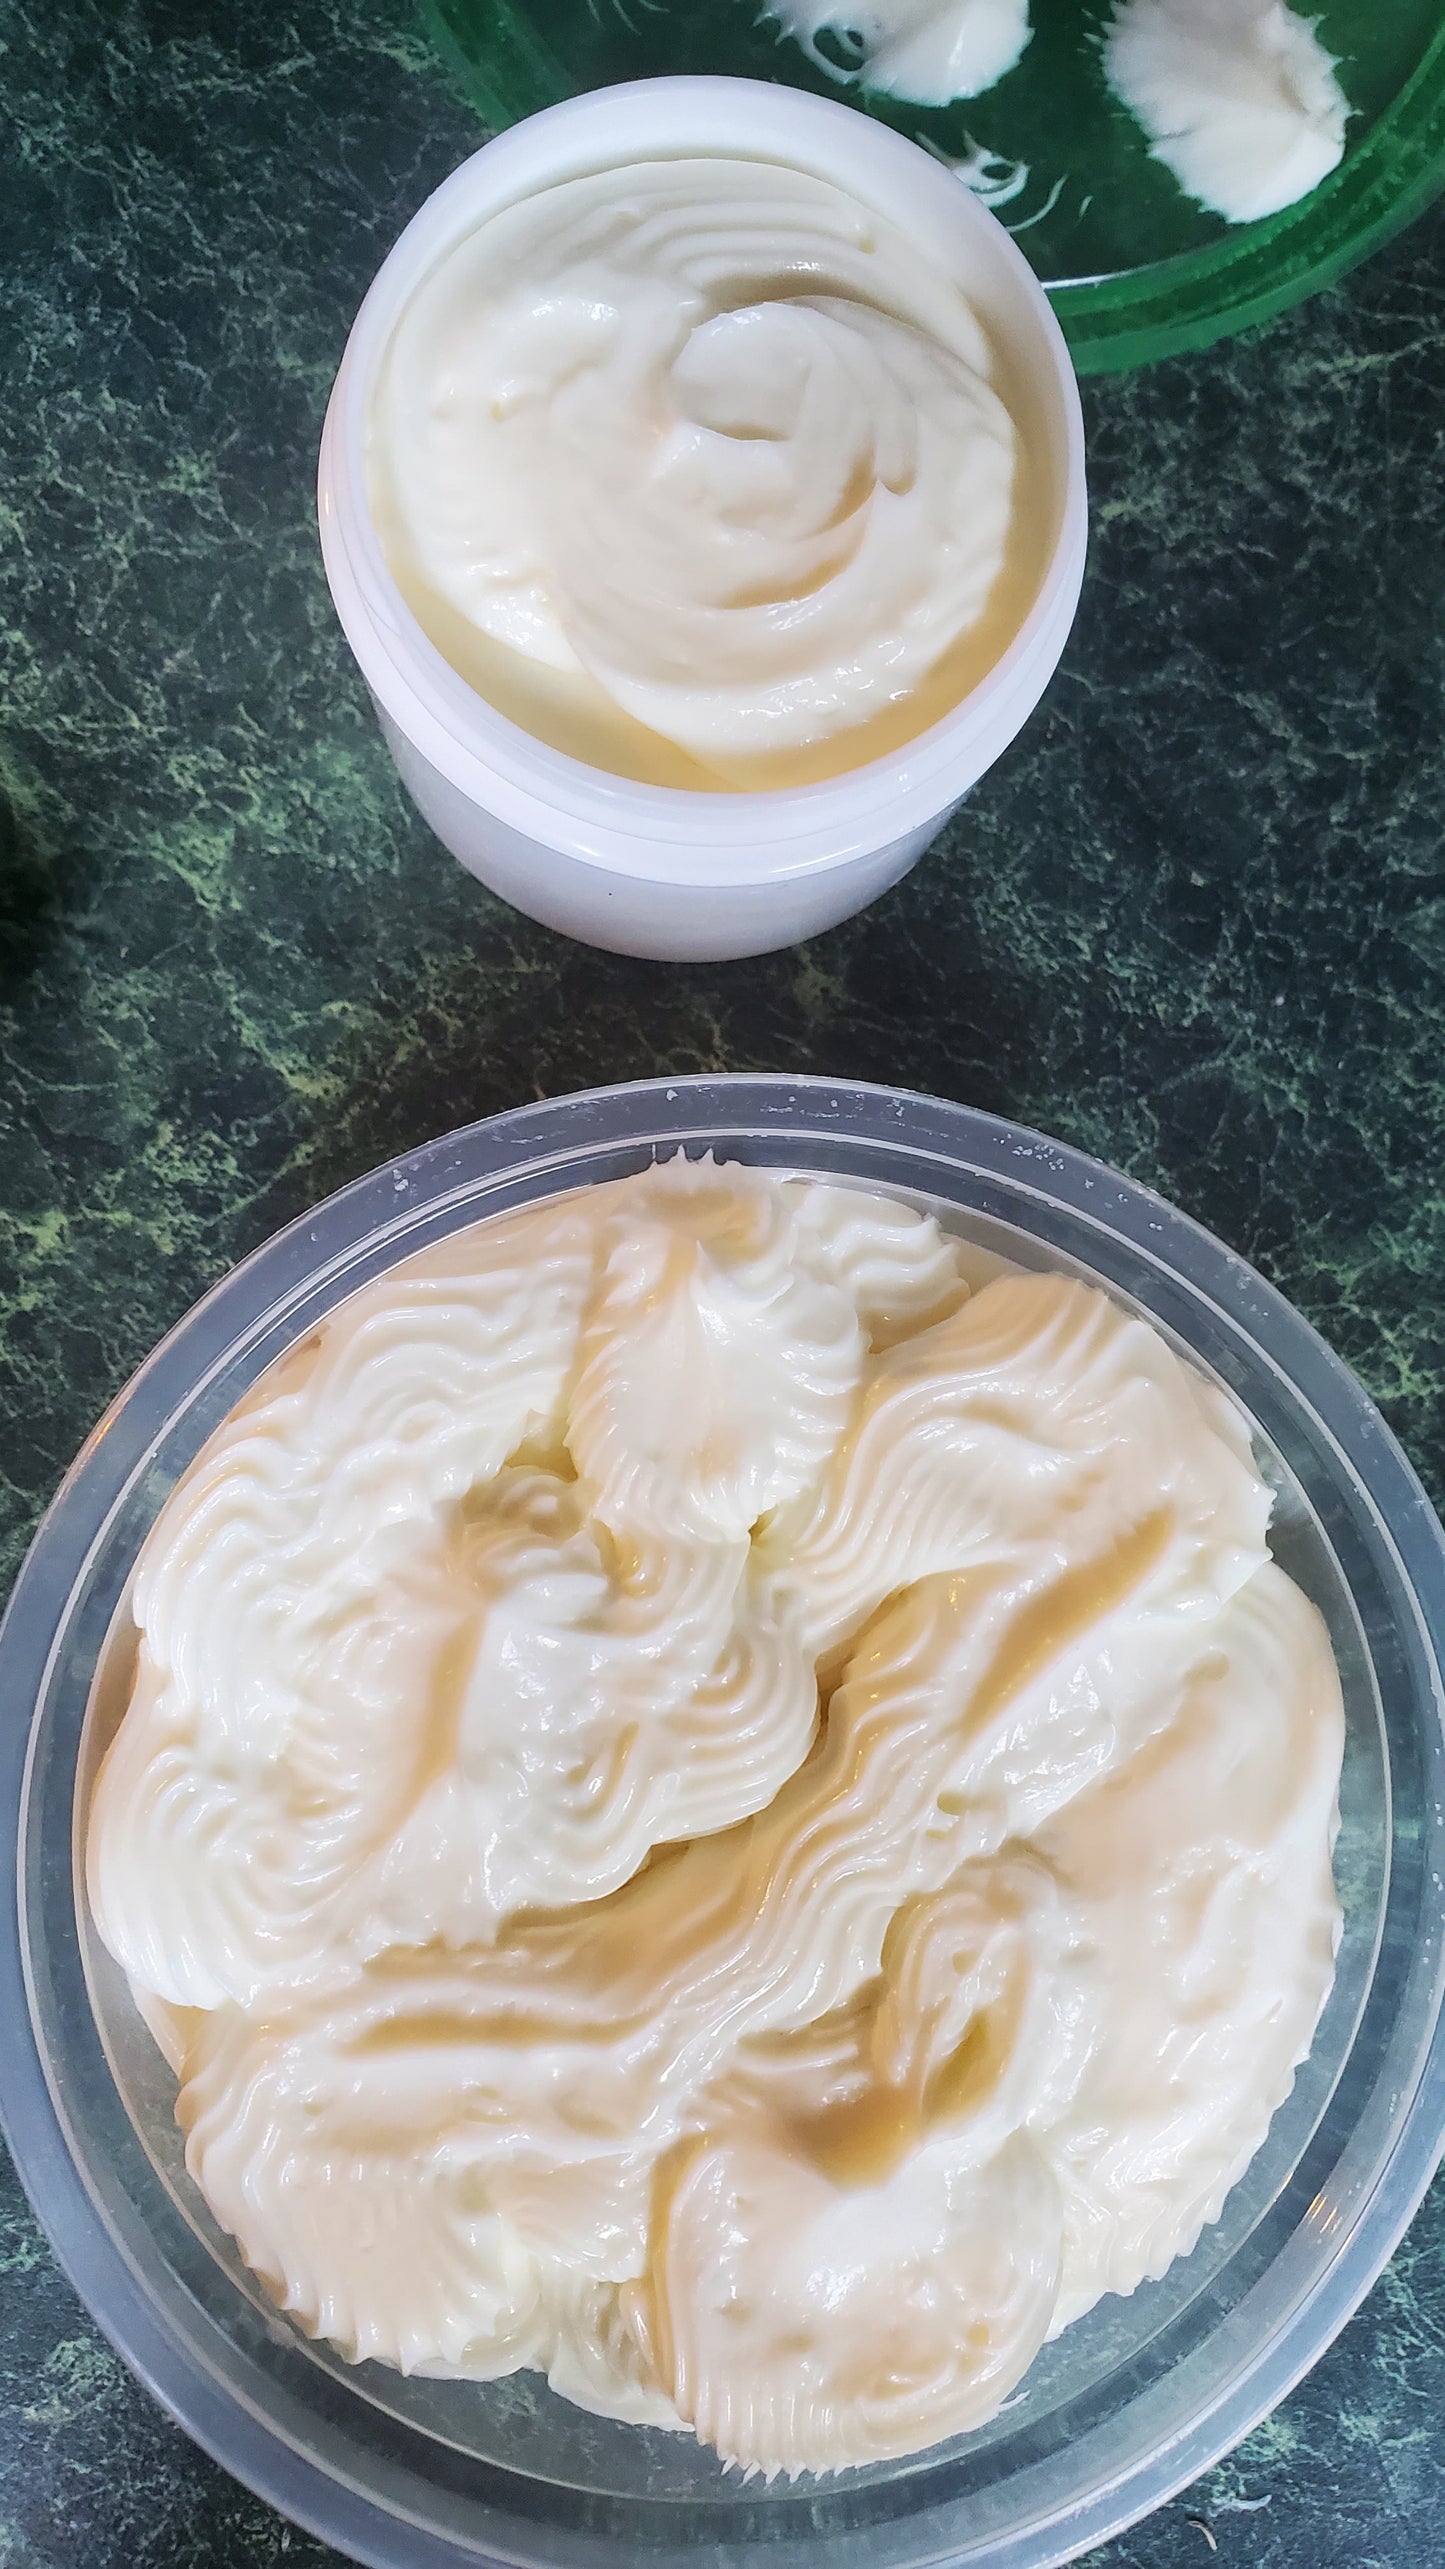 Quadruple butter body cream 8oz